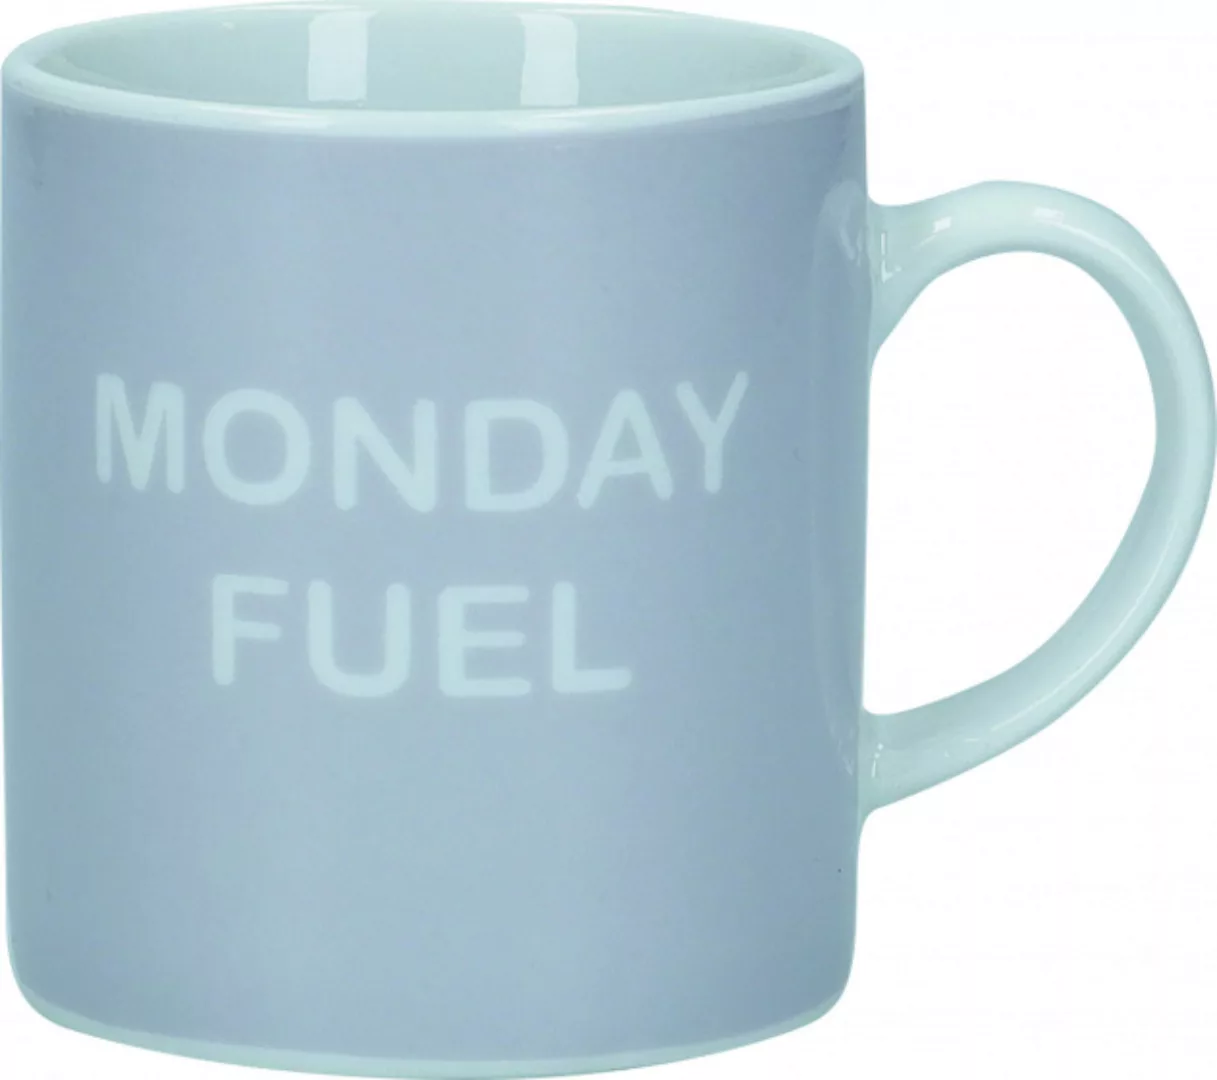 Espressotasse Monday Fuel 80 Ml Porzellan Grau günstig online kaufen